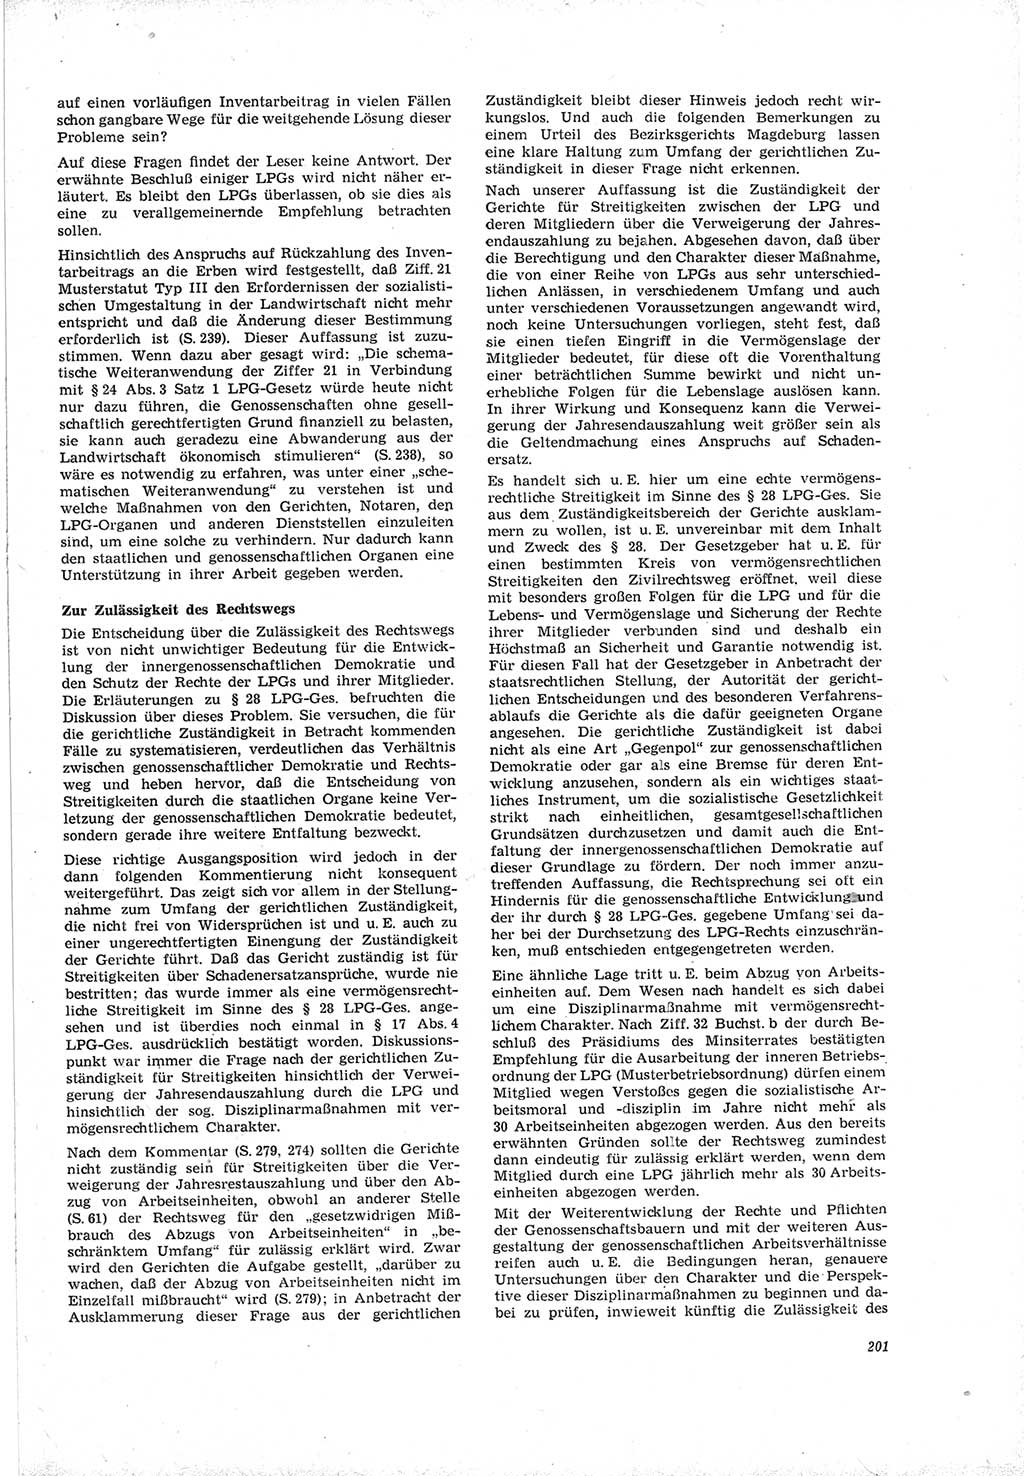 Neue Justiz (NJ), Zeitschrift für Recht und Rechtswissenschaft [Deutsche Demokratische Republik (DDR)], 19. Jahrgang 1965, Seite 201 (NJ DDR 1965, S. 201)